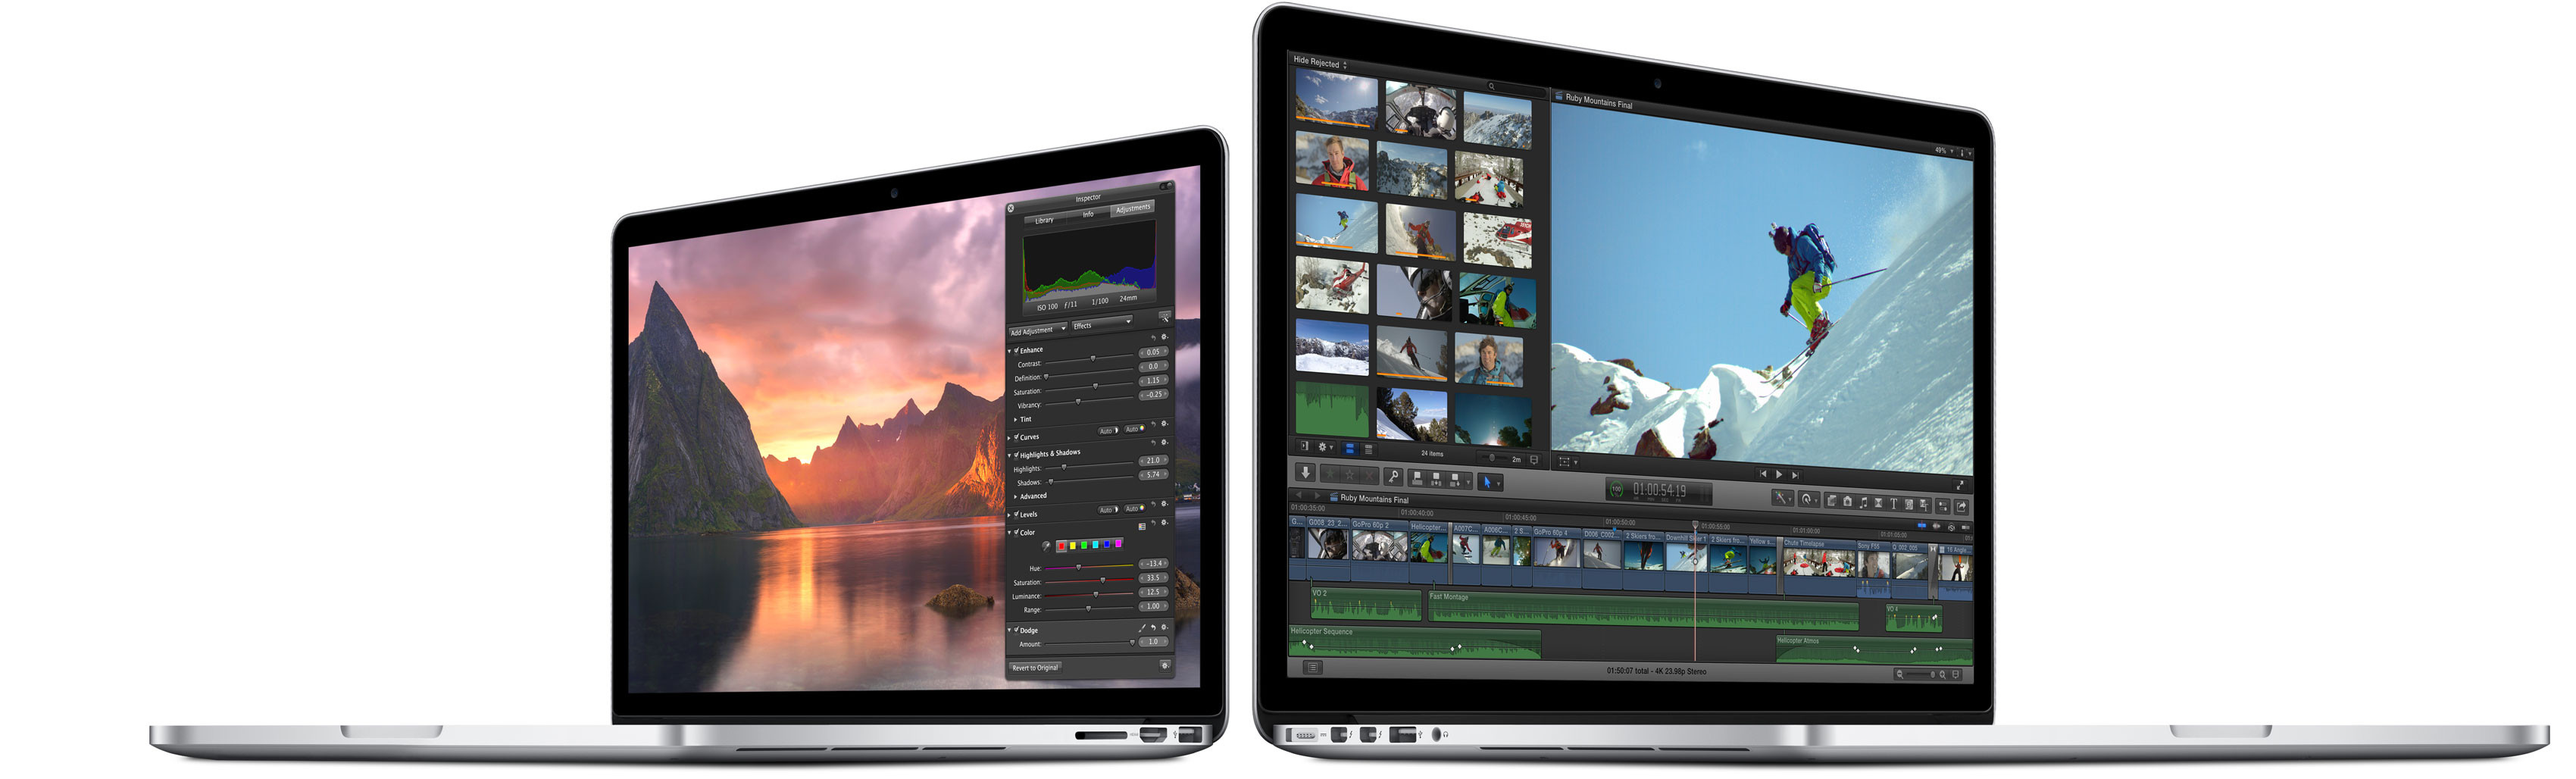 Immagine pubblicata in relazione al seguente contenuto: Apple aggiorna i MacBook Pro da 13-inch e i MacBook Air | Nome immagine: news22306_Apple-MacBook-Pro-13-inch-Retina_1.jpg